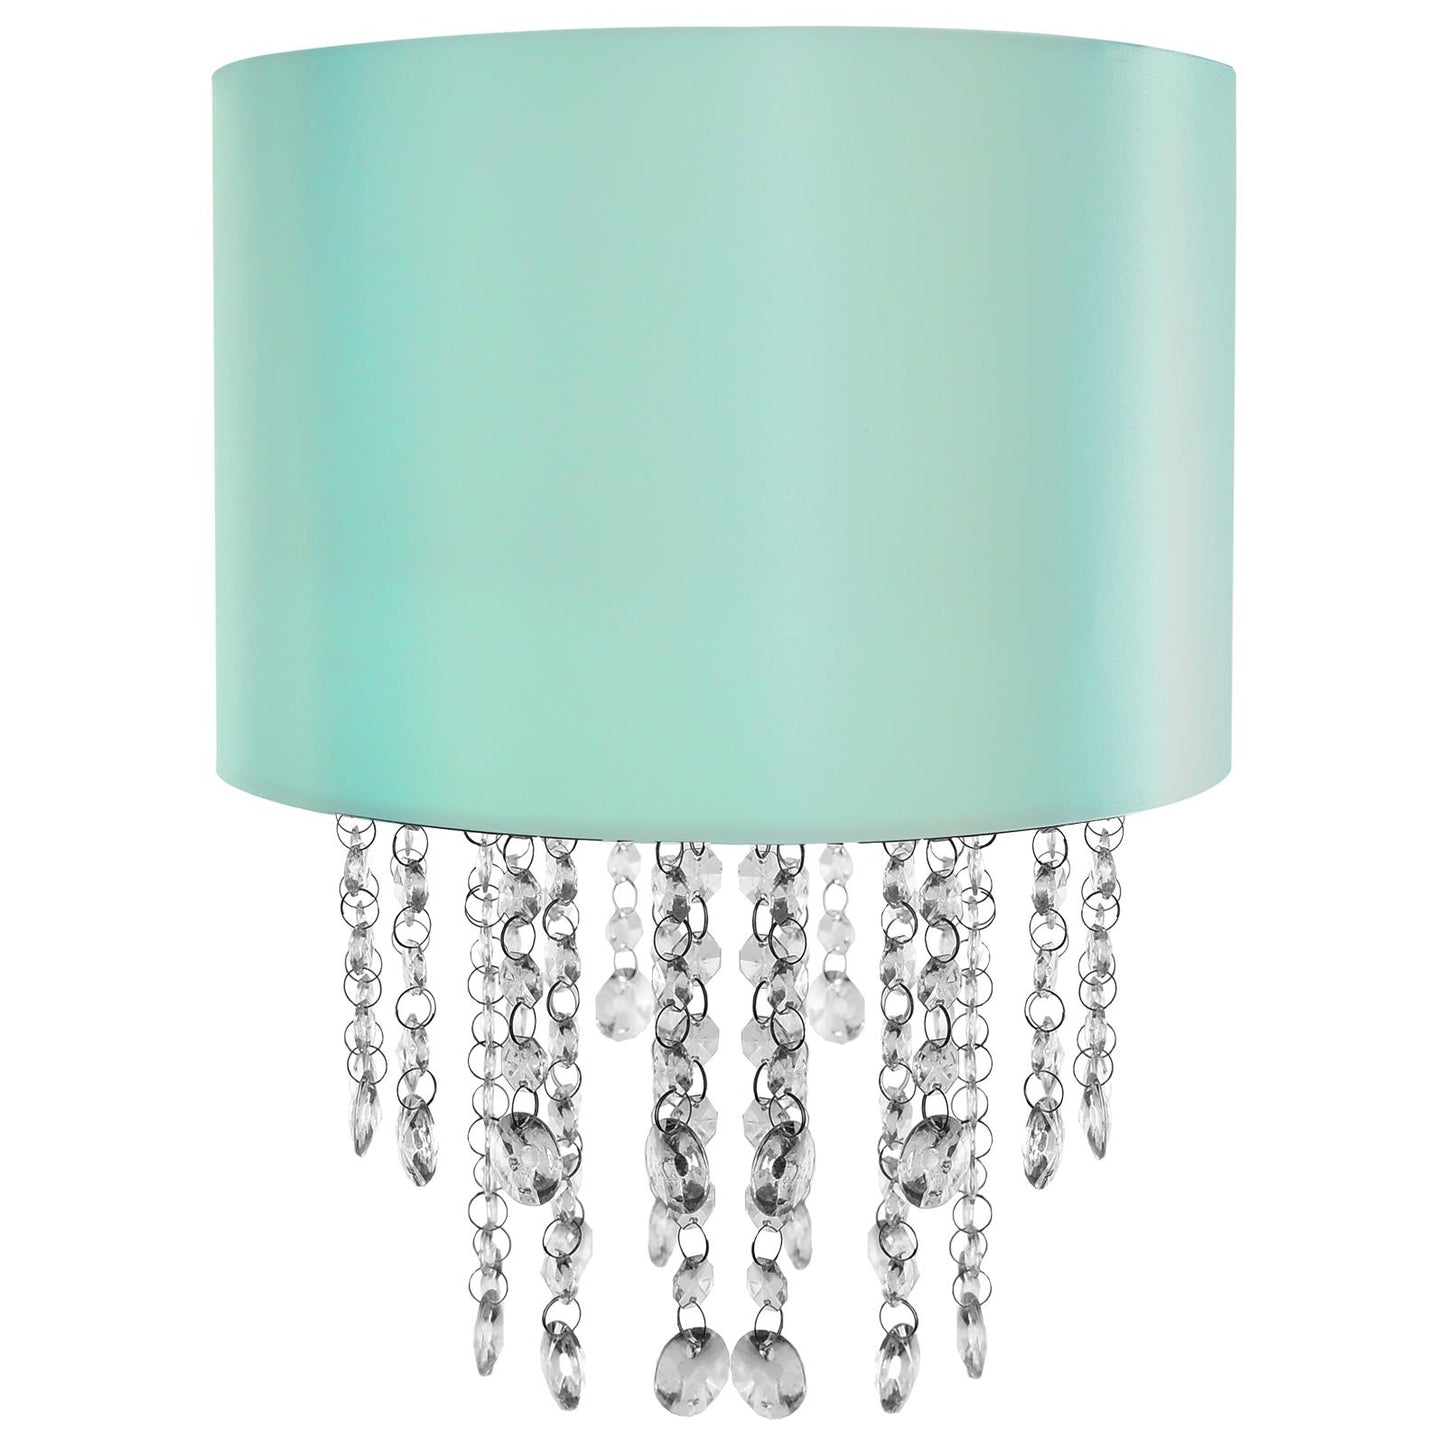 Metallic Lagoon Green Cylinder Ceiling Lamp Shade